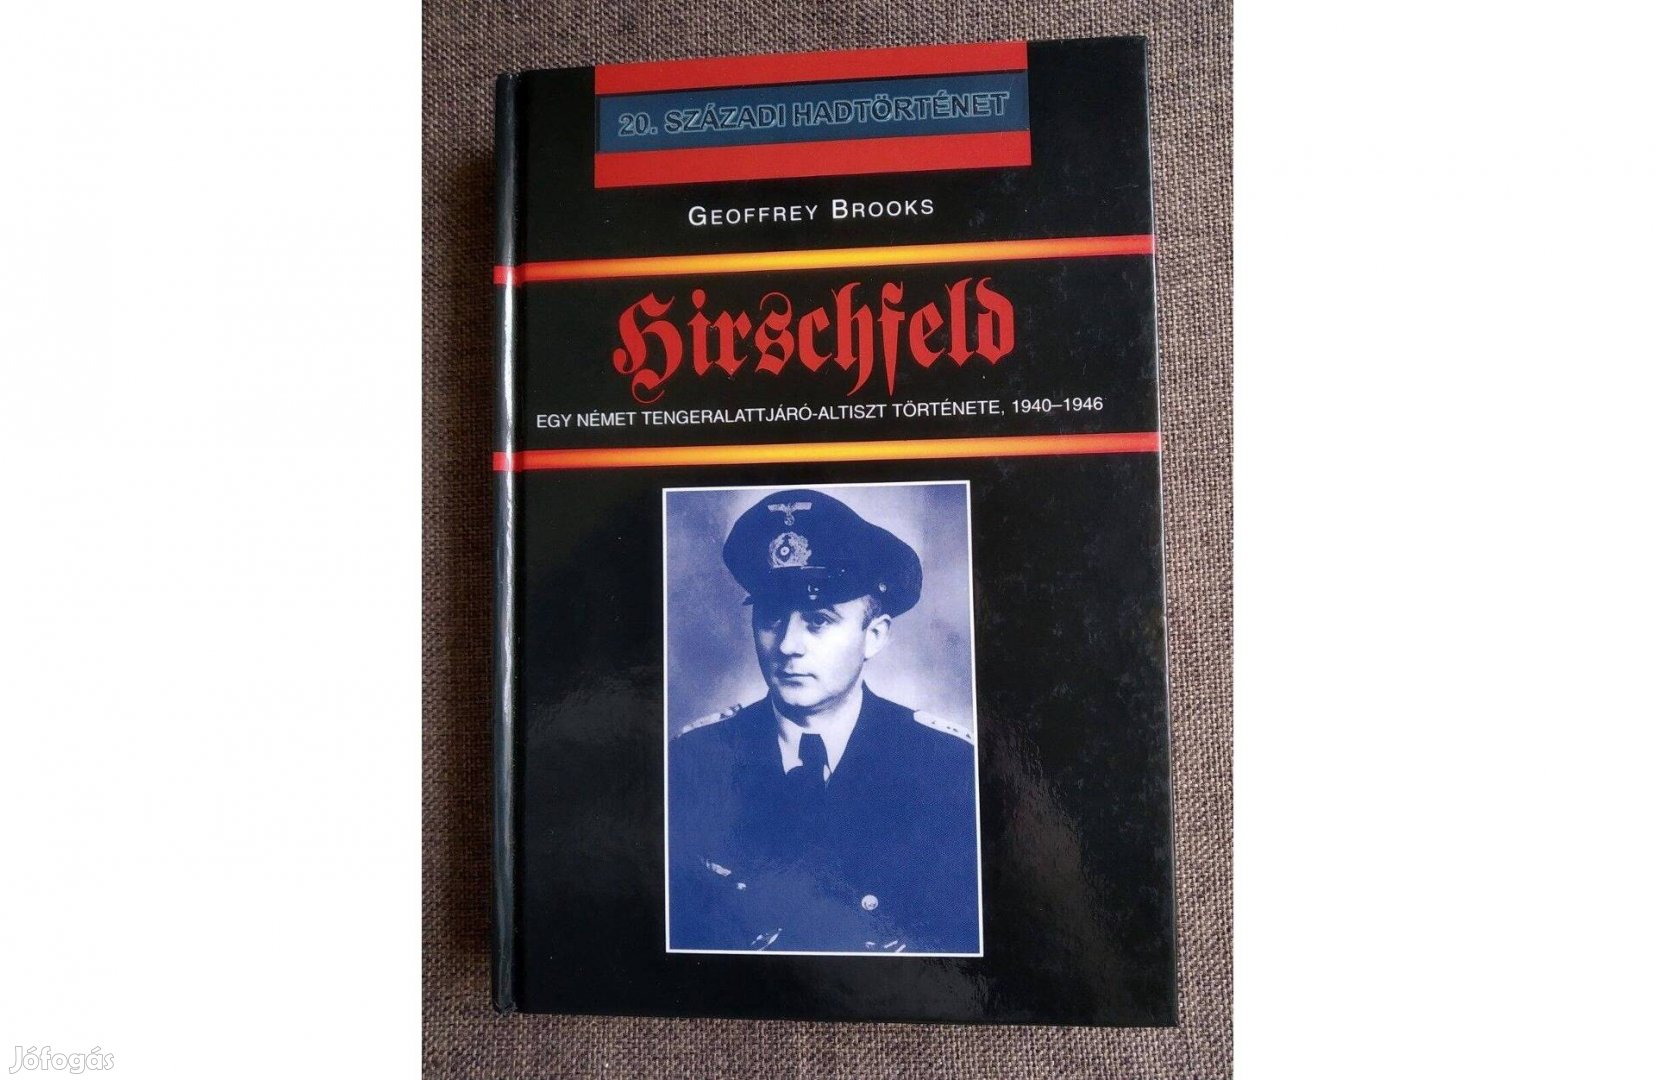 Hirschfeld Geoffrey Brooks Hajja és Fiai Kiadó, 2003